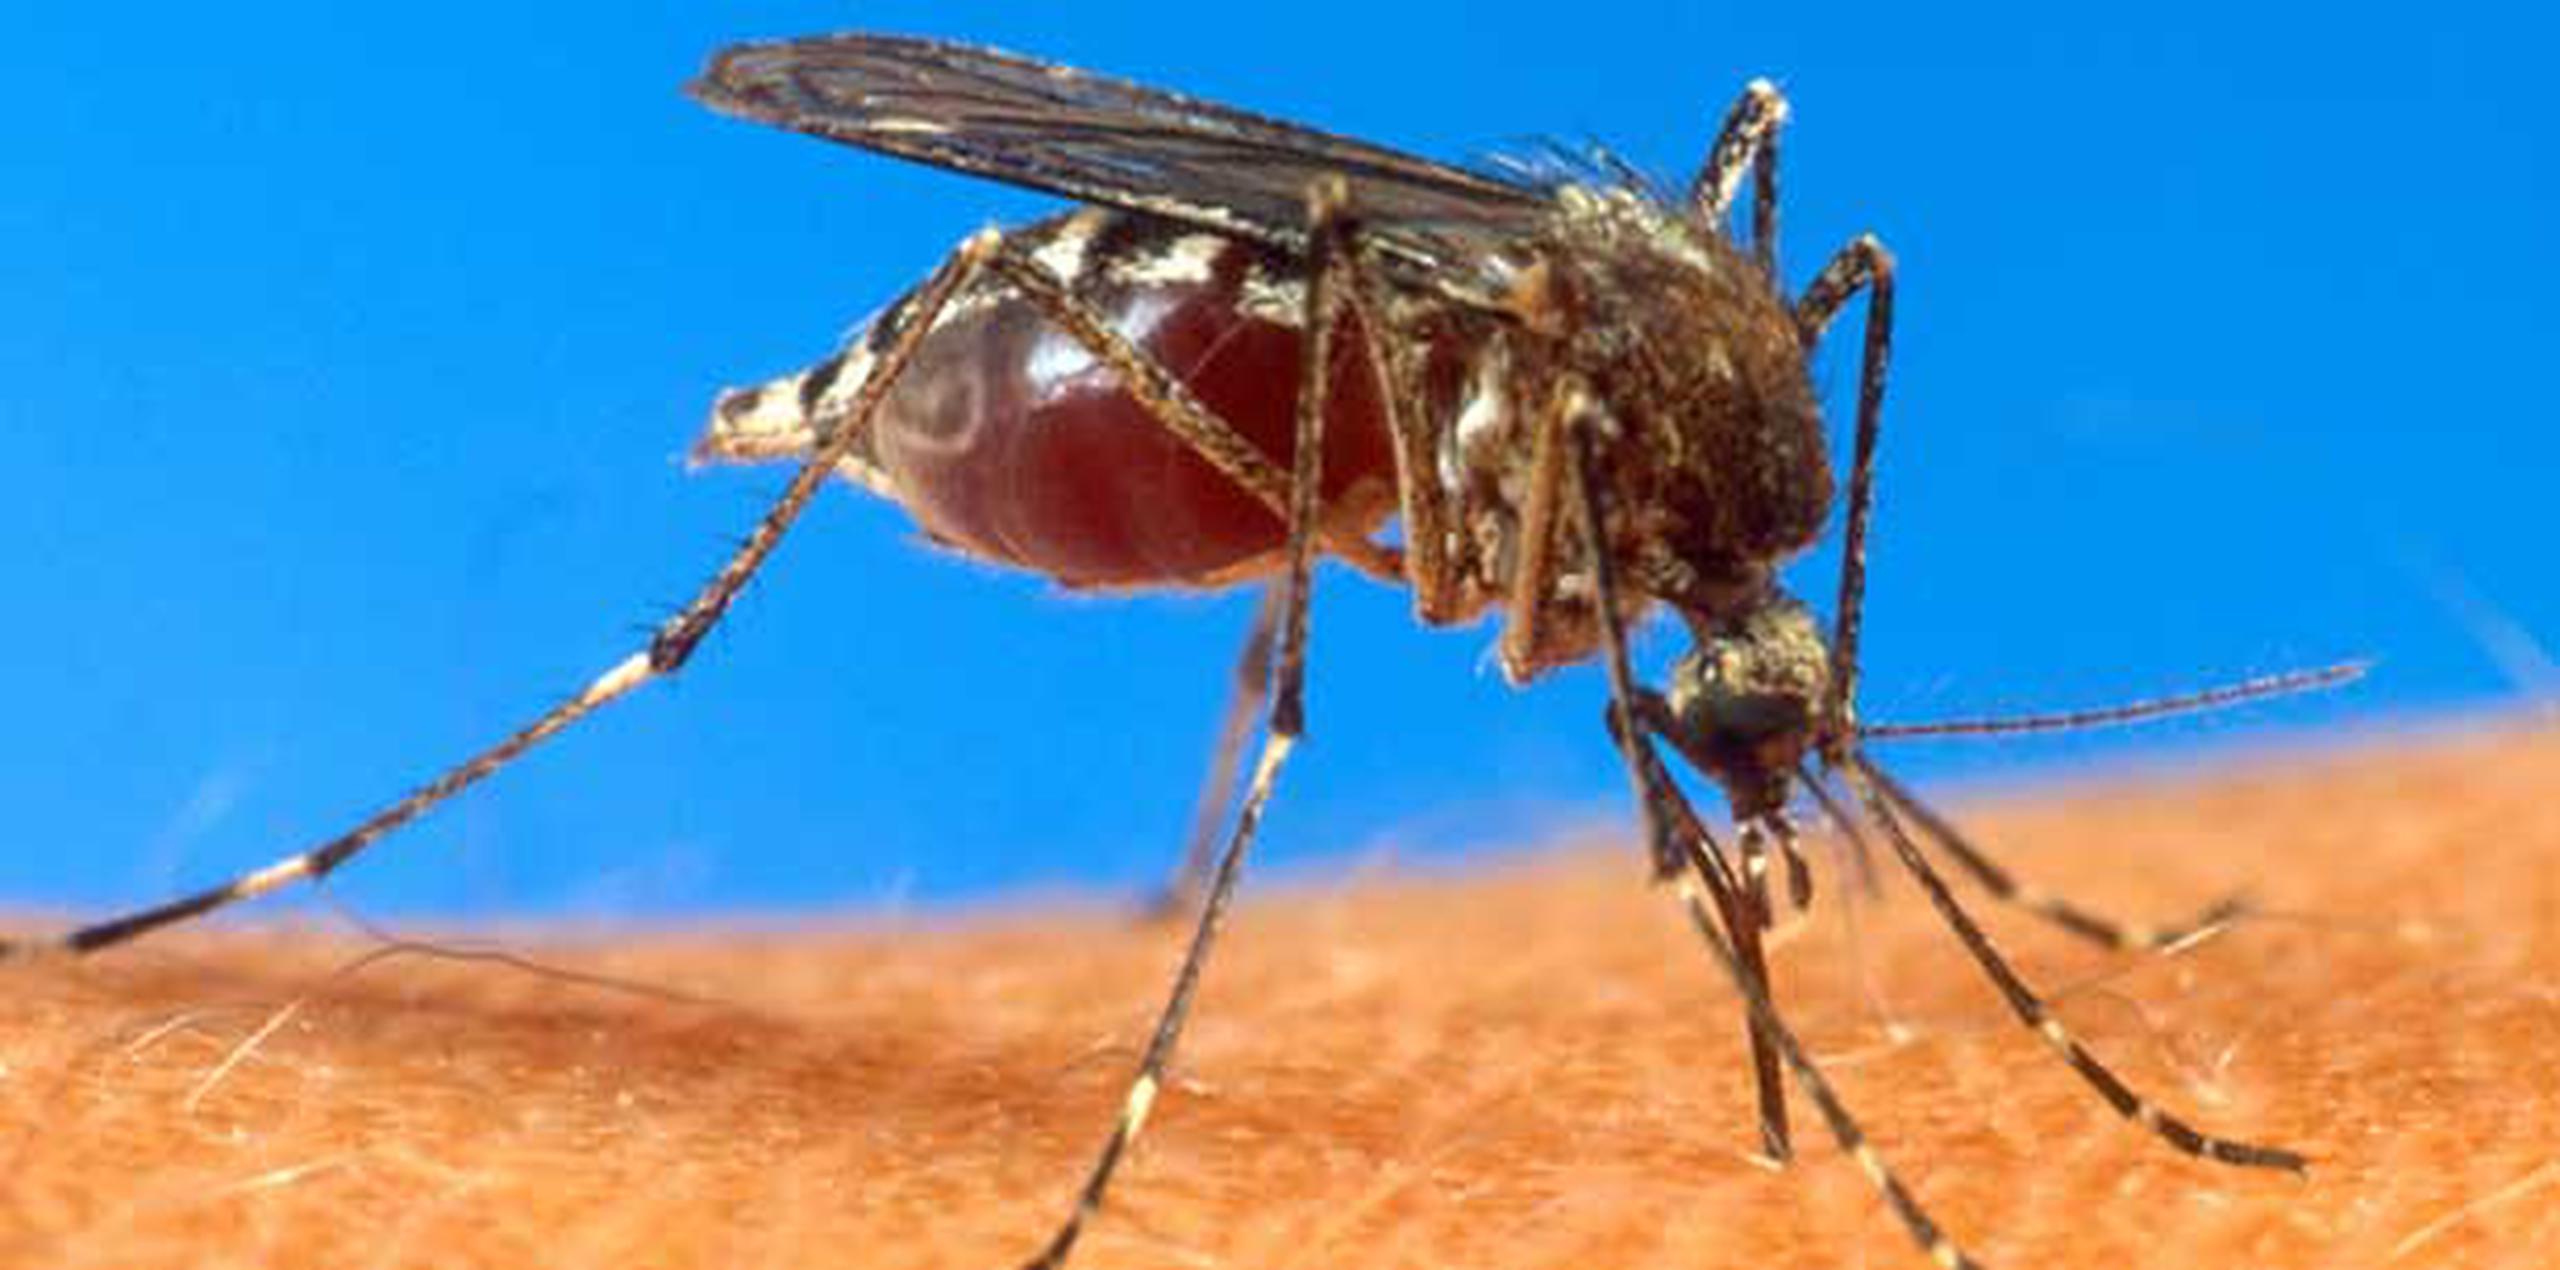 El brote de zika se declaró emergencia global de salud pública tras verse relacionado con deformidades en el cerebro de bebés en Sudamérica. (Archivo)